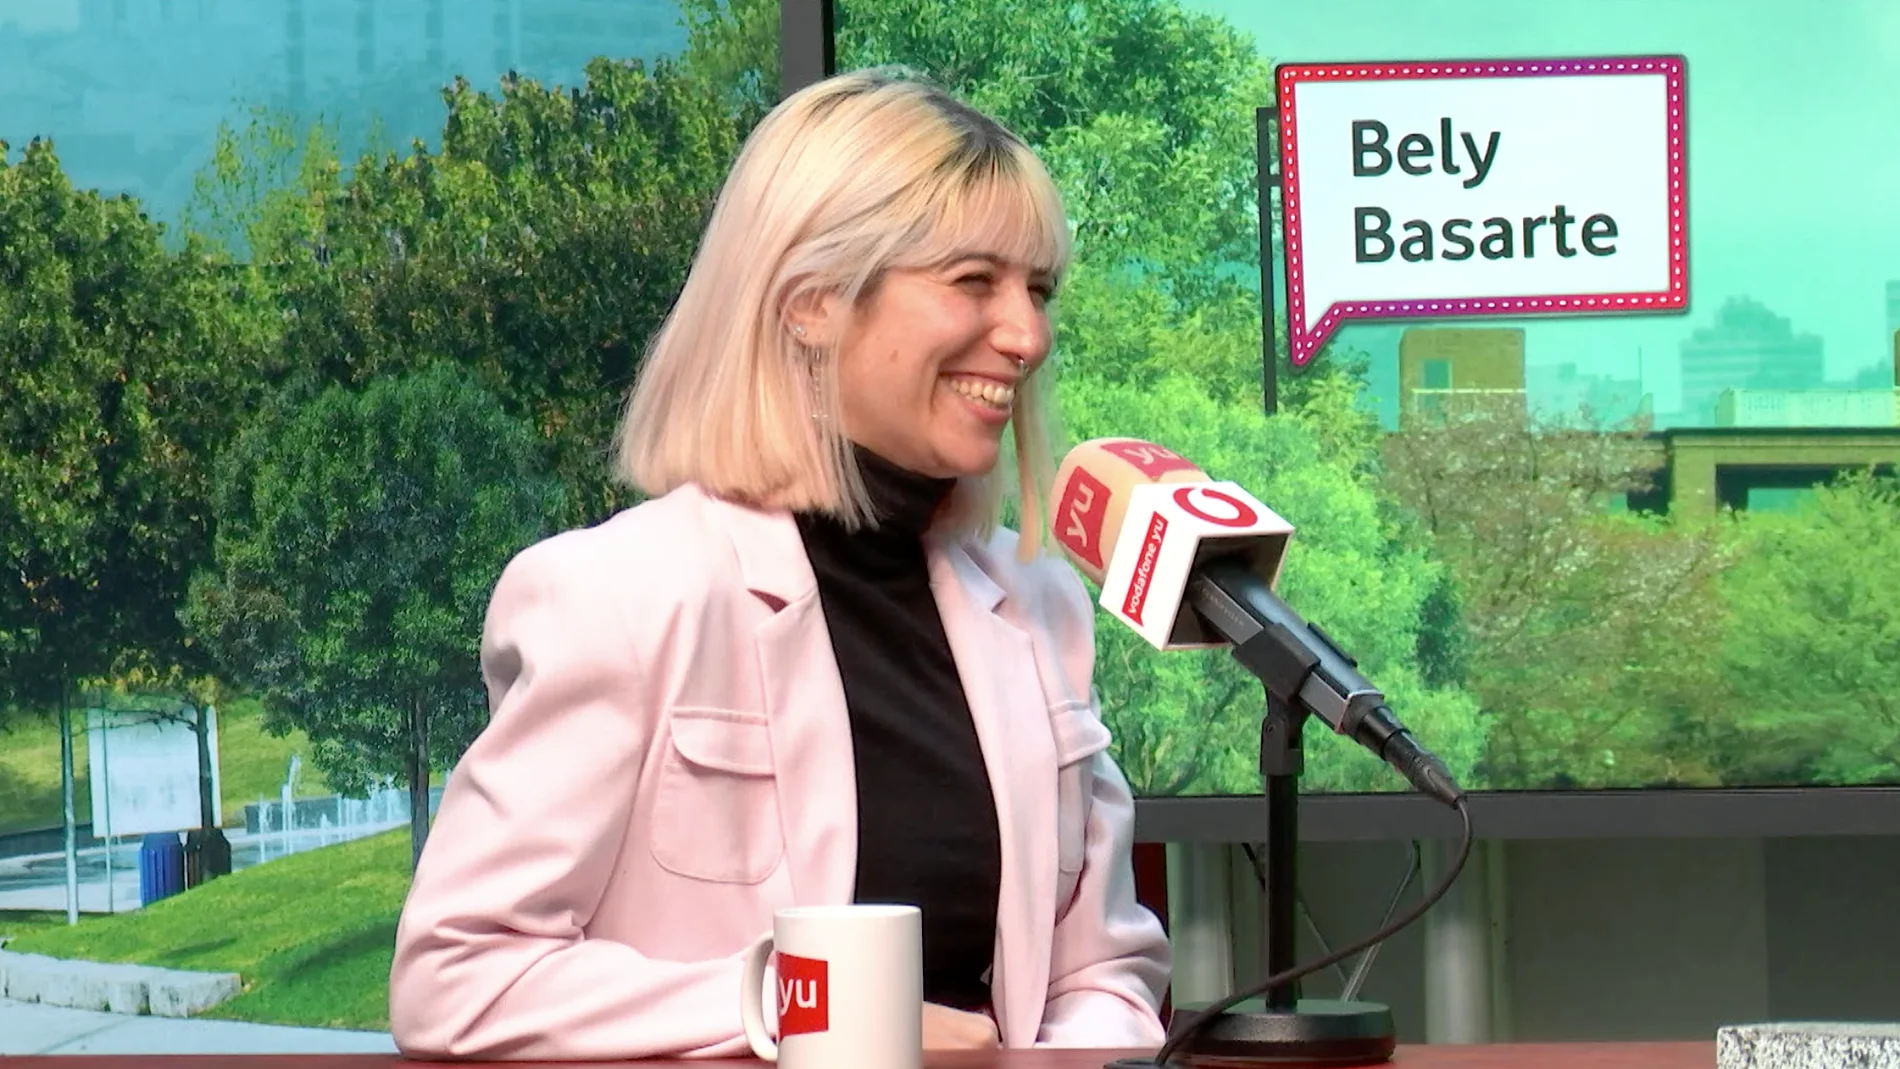 Bely Basarte: "Estoy produciendo yo en casa mi nuevo EP, se llamará 'Nostalgia' y es para junio" 